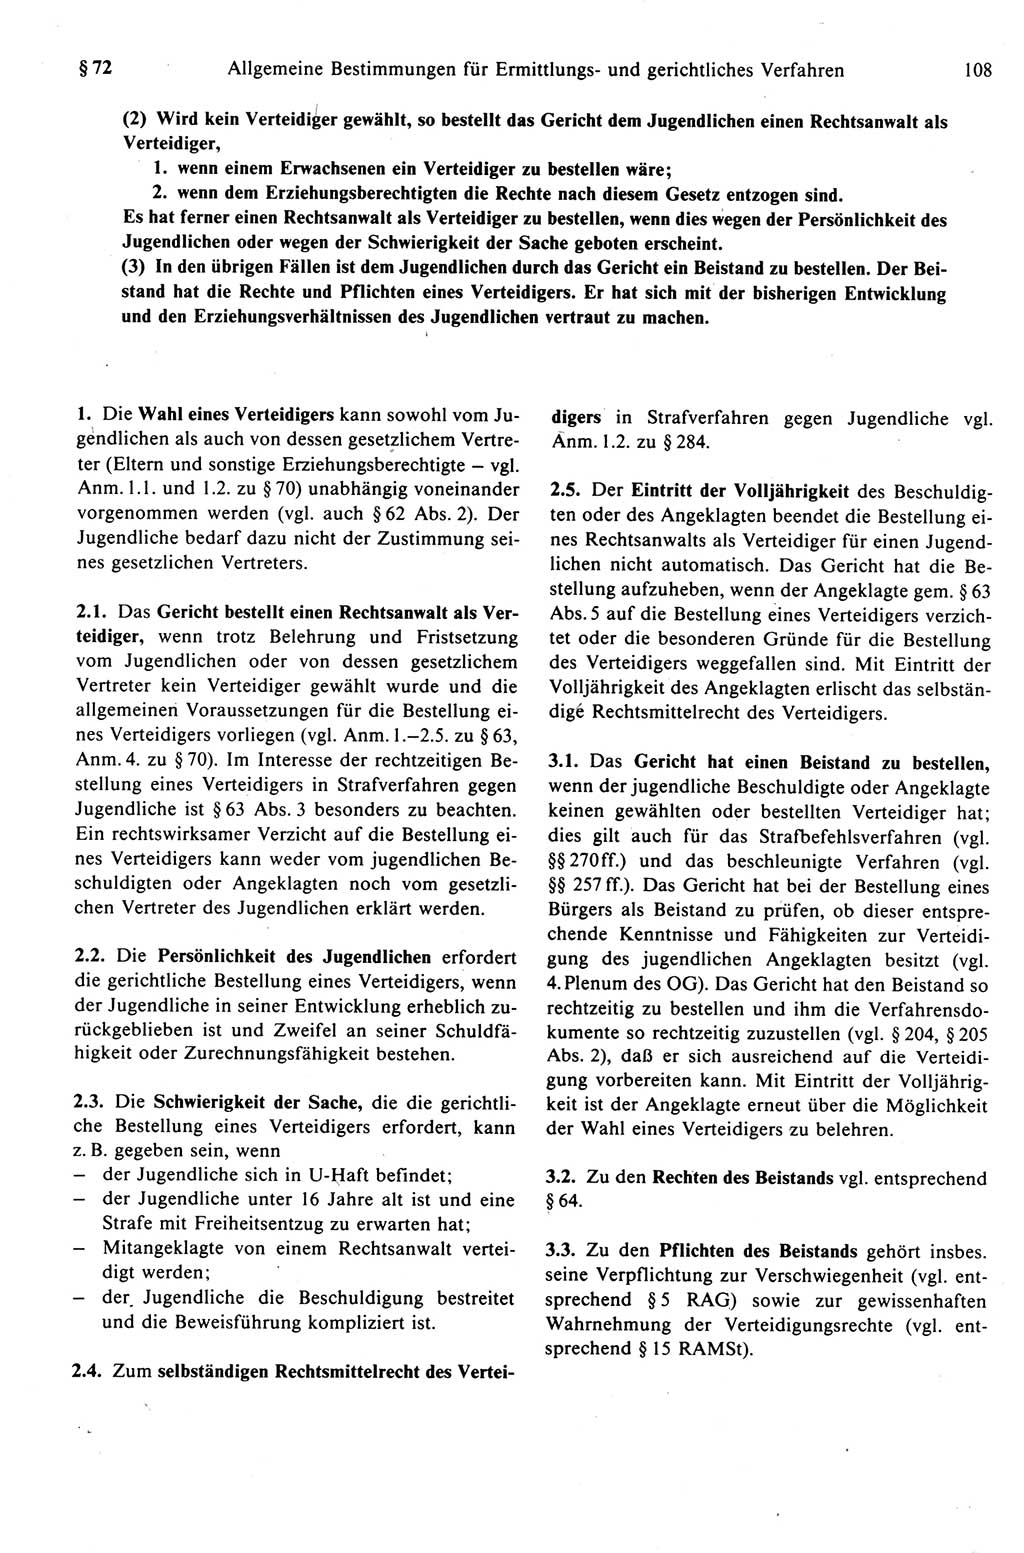 Strafprozeßrecht der DDR (Deutsche Demokratische Republik), Kommentar zur Strafprozeßordnung (StPO) 1989, Seite 108 (Strafprozeßr. DDR Komm. StPO 1989, S. 108)